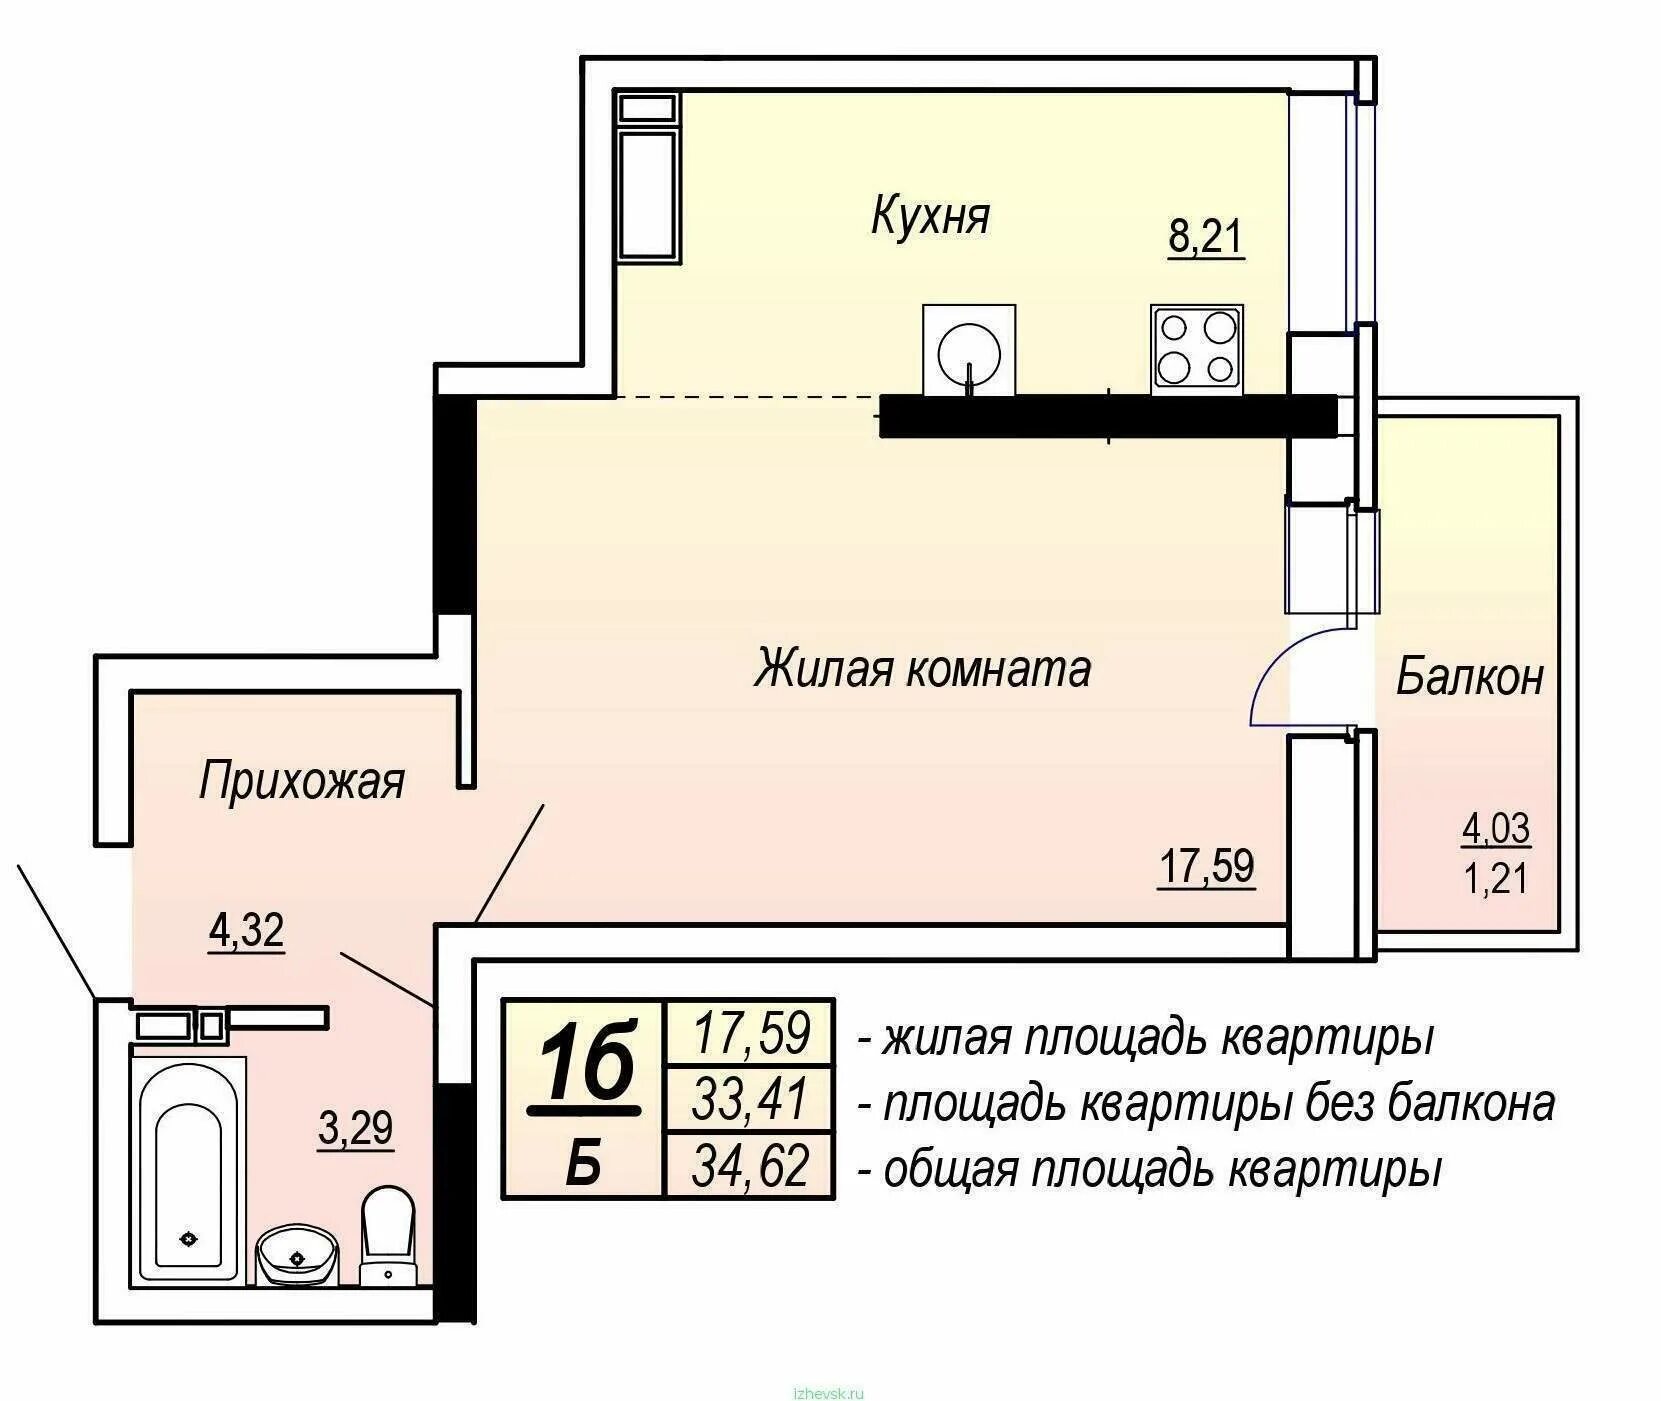 Размер жилплощади. Общая площадь квартиры. Жилая площадь квартиры и общая площадь. Жилая площадь квартиры это. Общая площадь квартиры на плане.